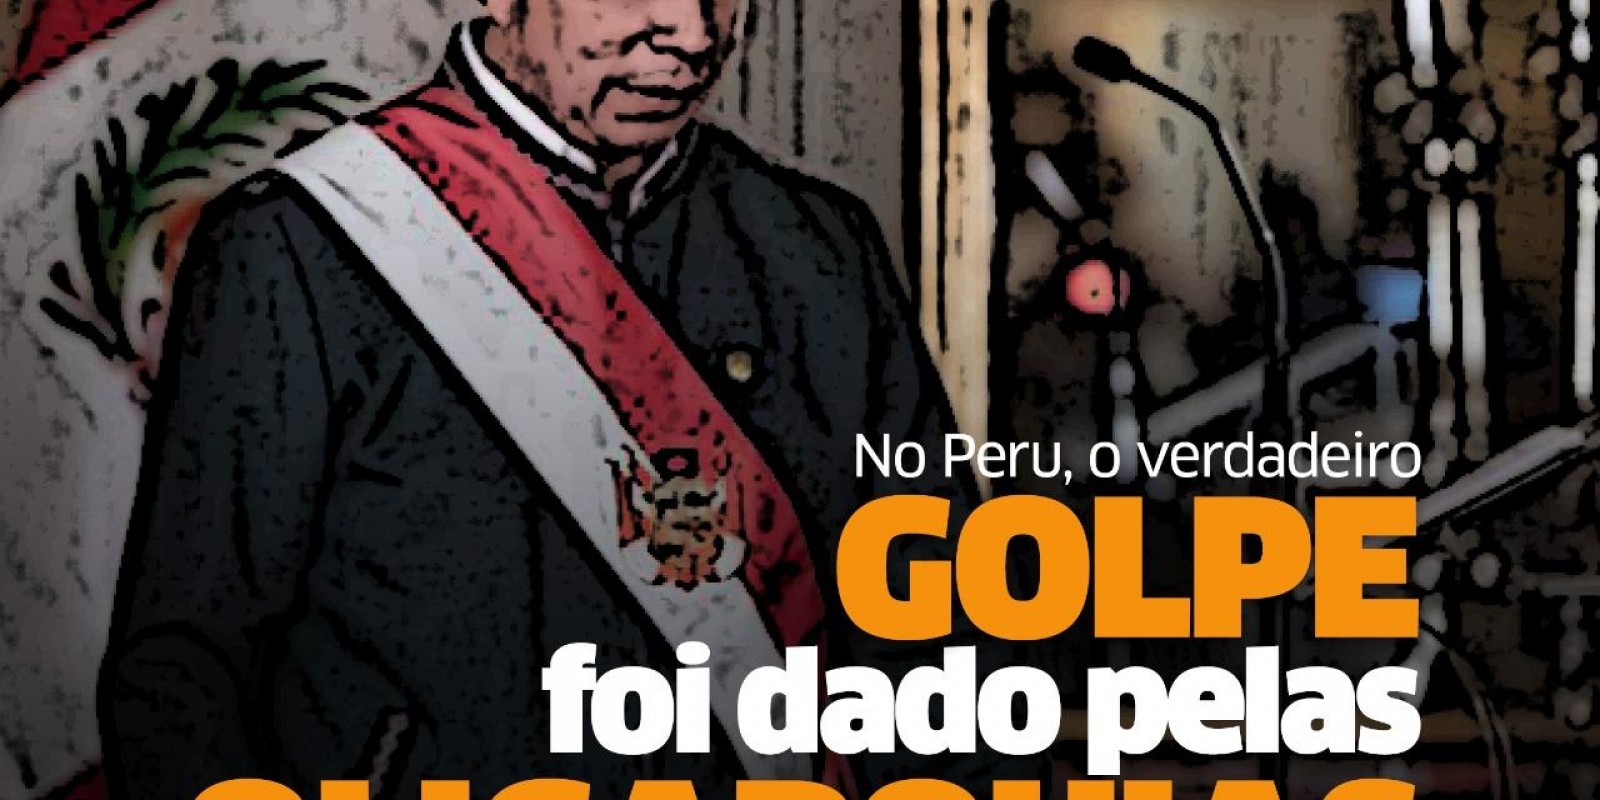 [Crise no Peru: O verdadeiro golpe foi dado pelas oligarquias pró-imperialistas.]